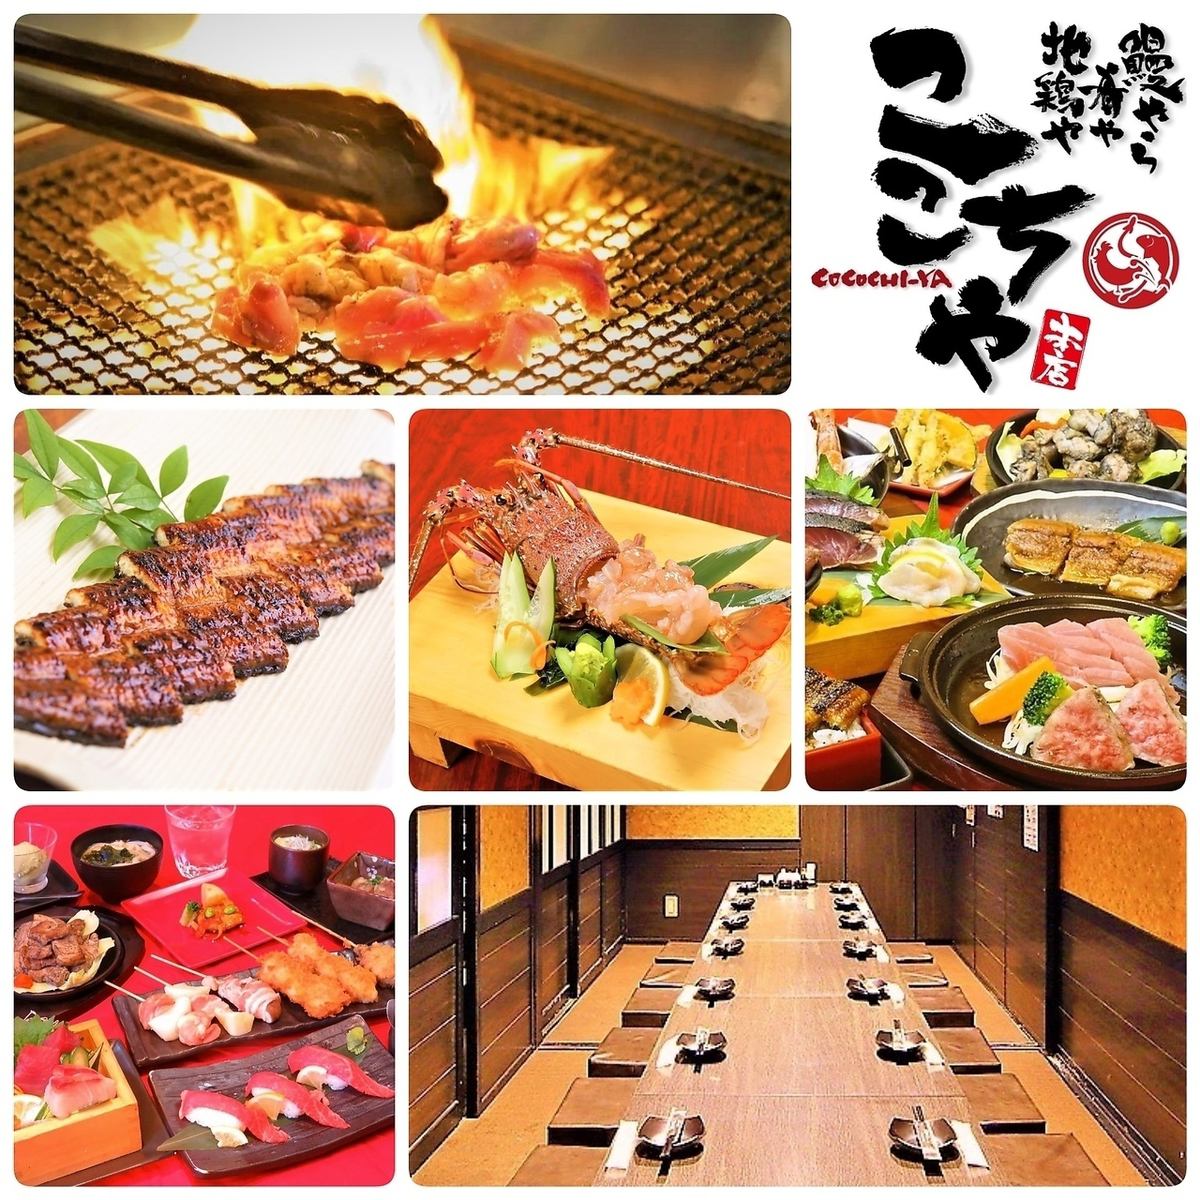 Kochiya的套餐风格是每人一道菜。非常适合娱乐或重要座位。